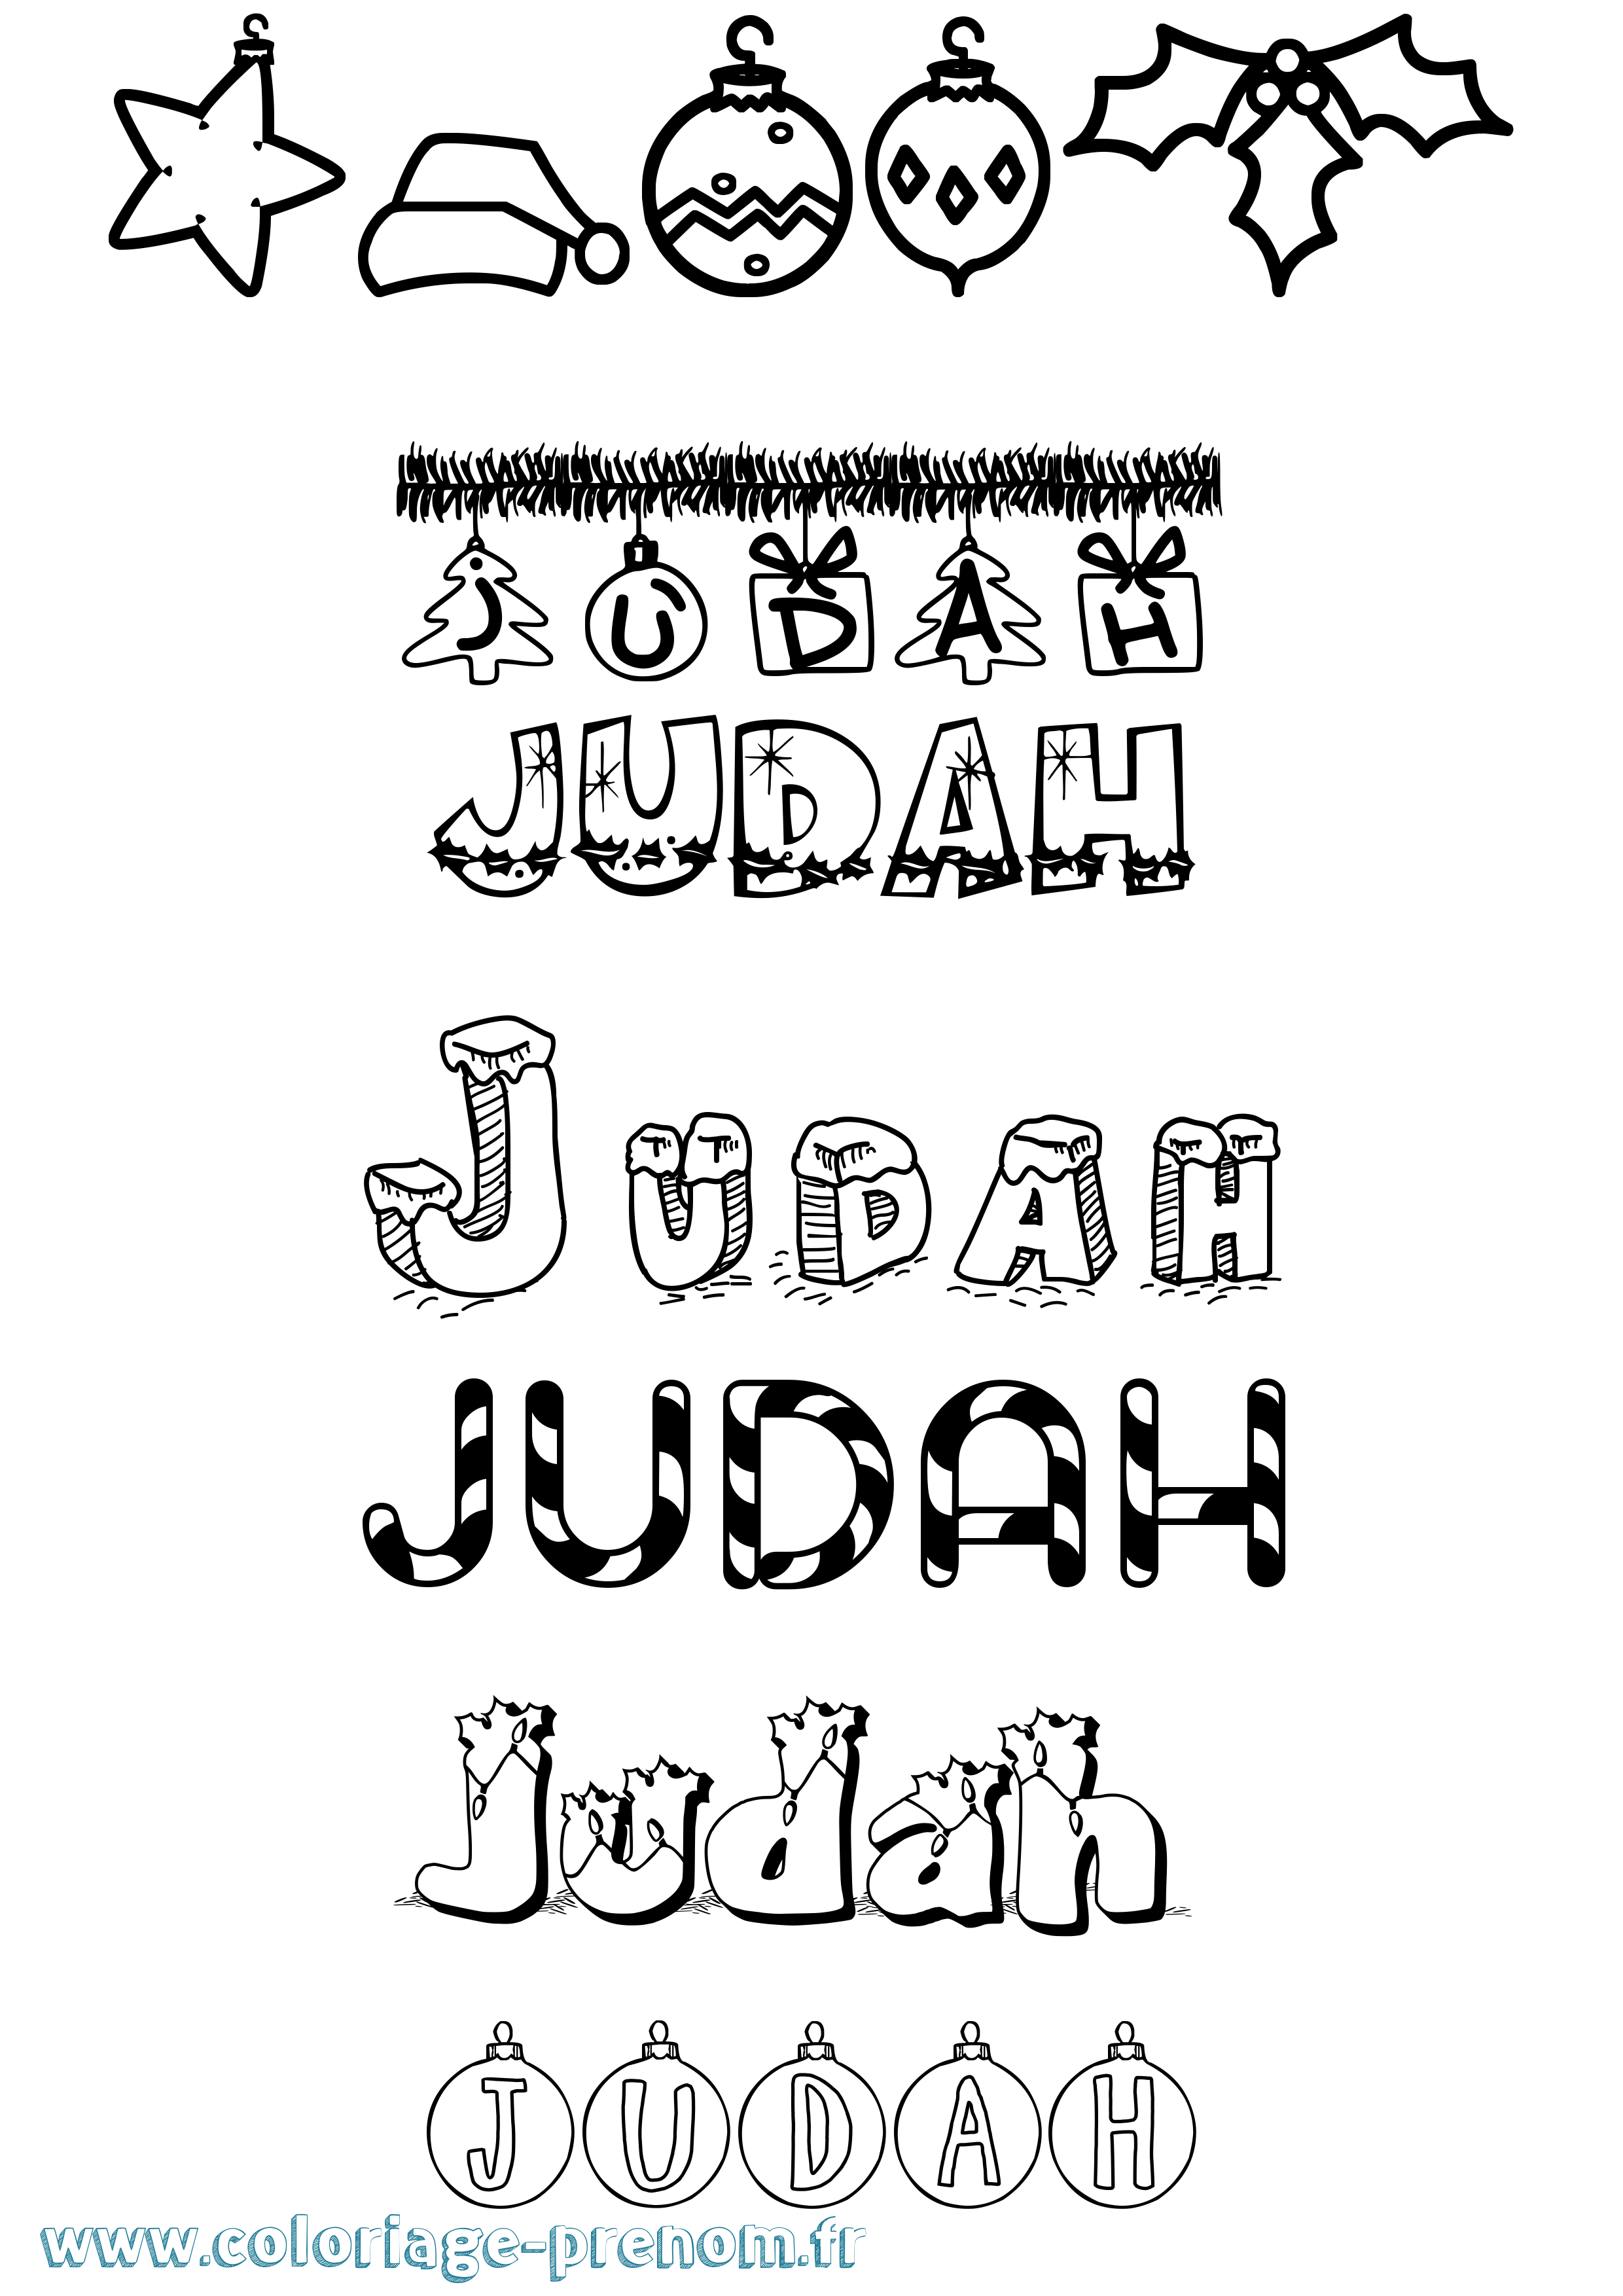 Coloriage prénom Judah Noël